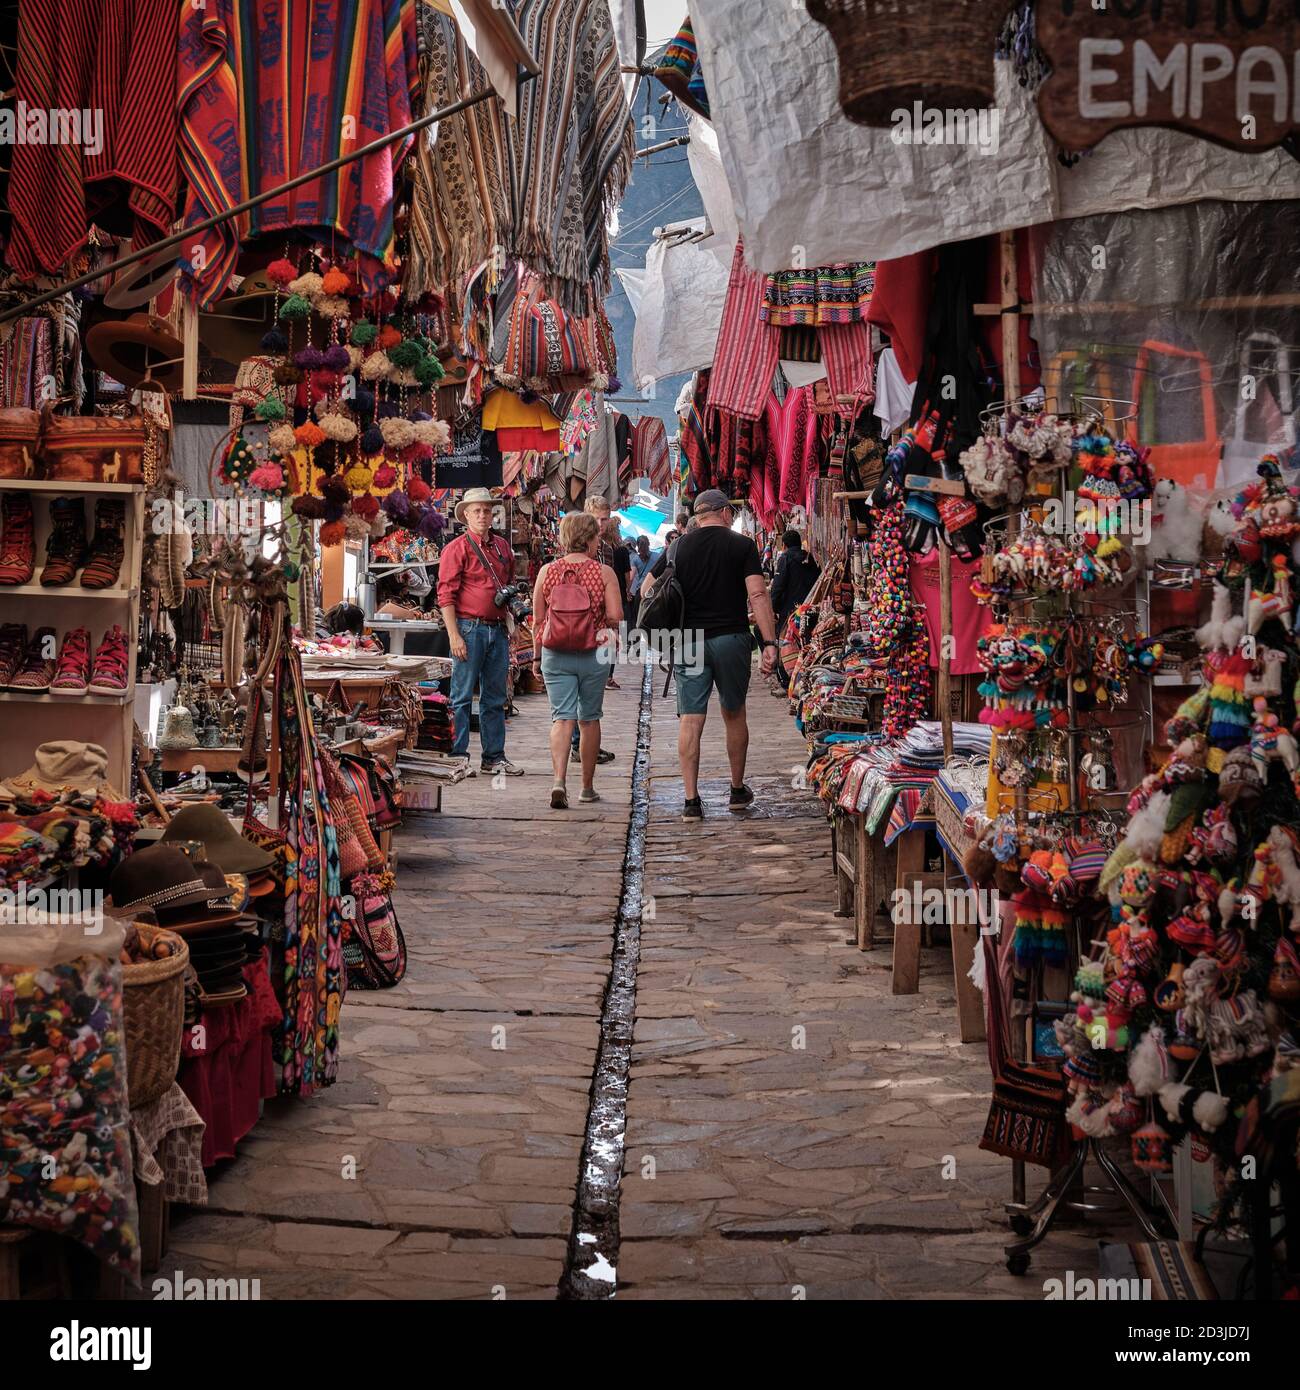 Les touristes flânent dans le marché de Pisaq, Pisac, au Pérou, entouré de souvenirs et de vêtements sur les étals du marché Banque D'Images